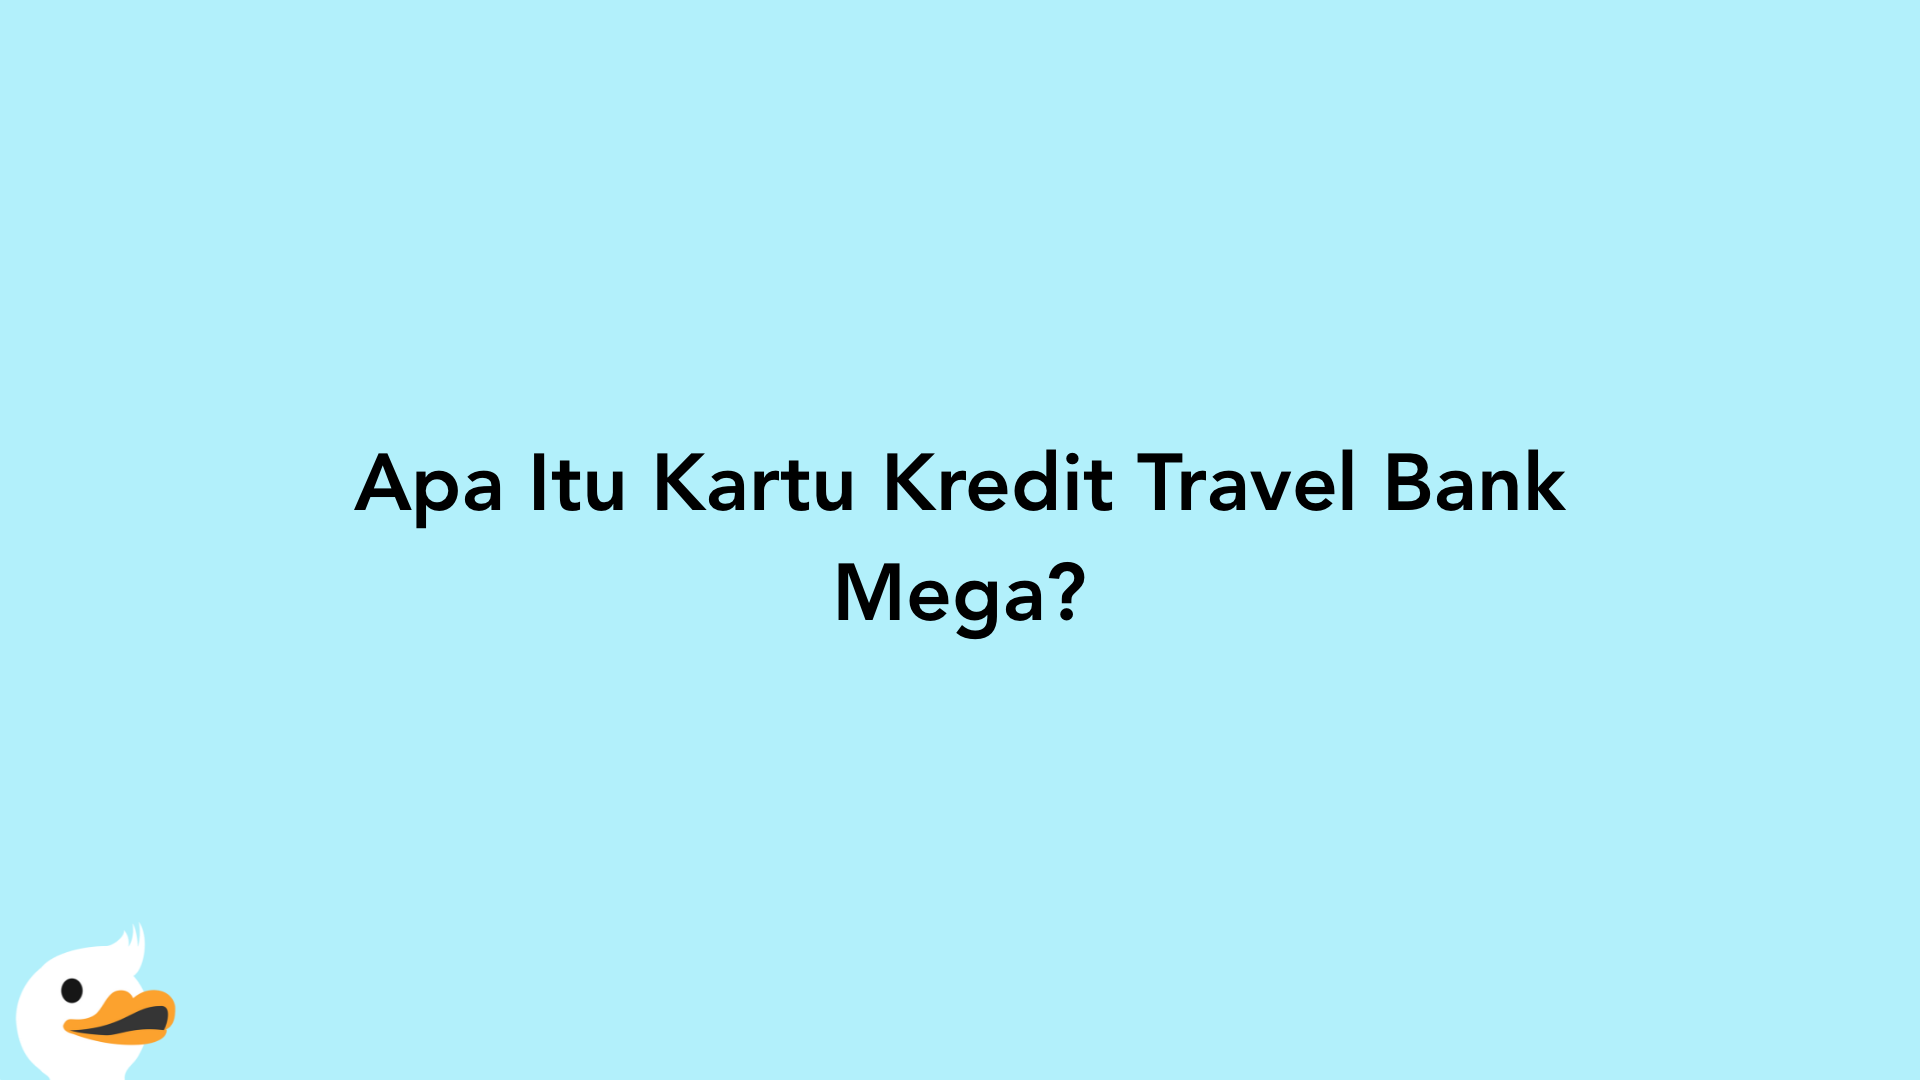 Apa Itu Kartu Kredit Travel Bank Mega?